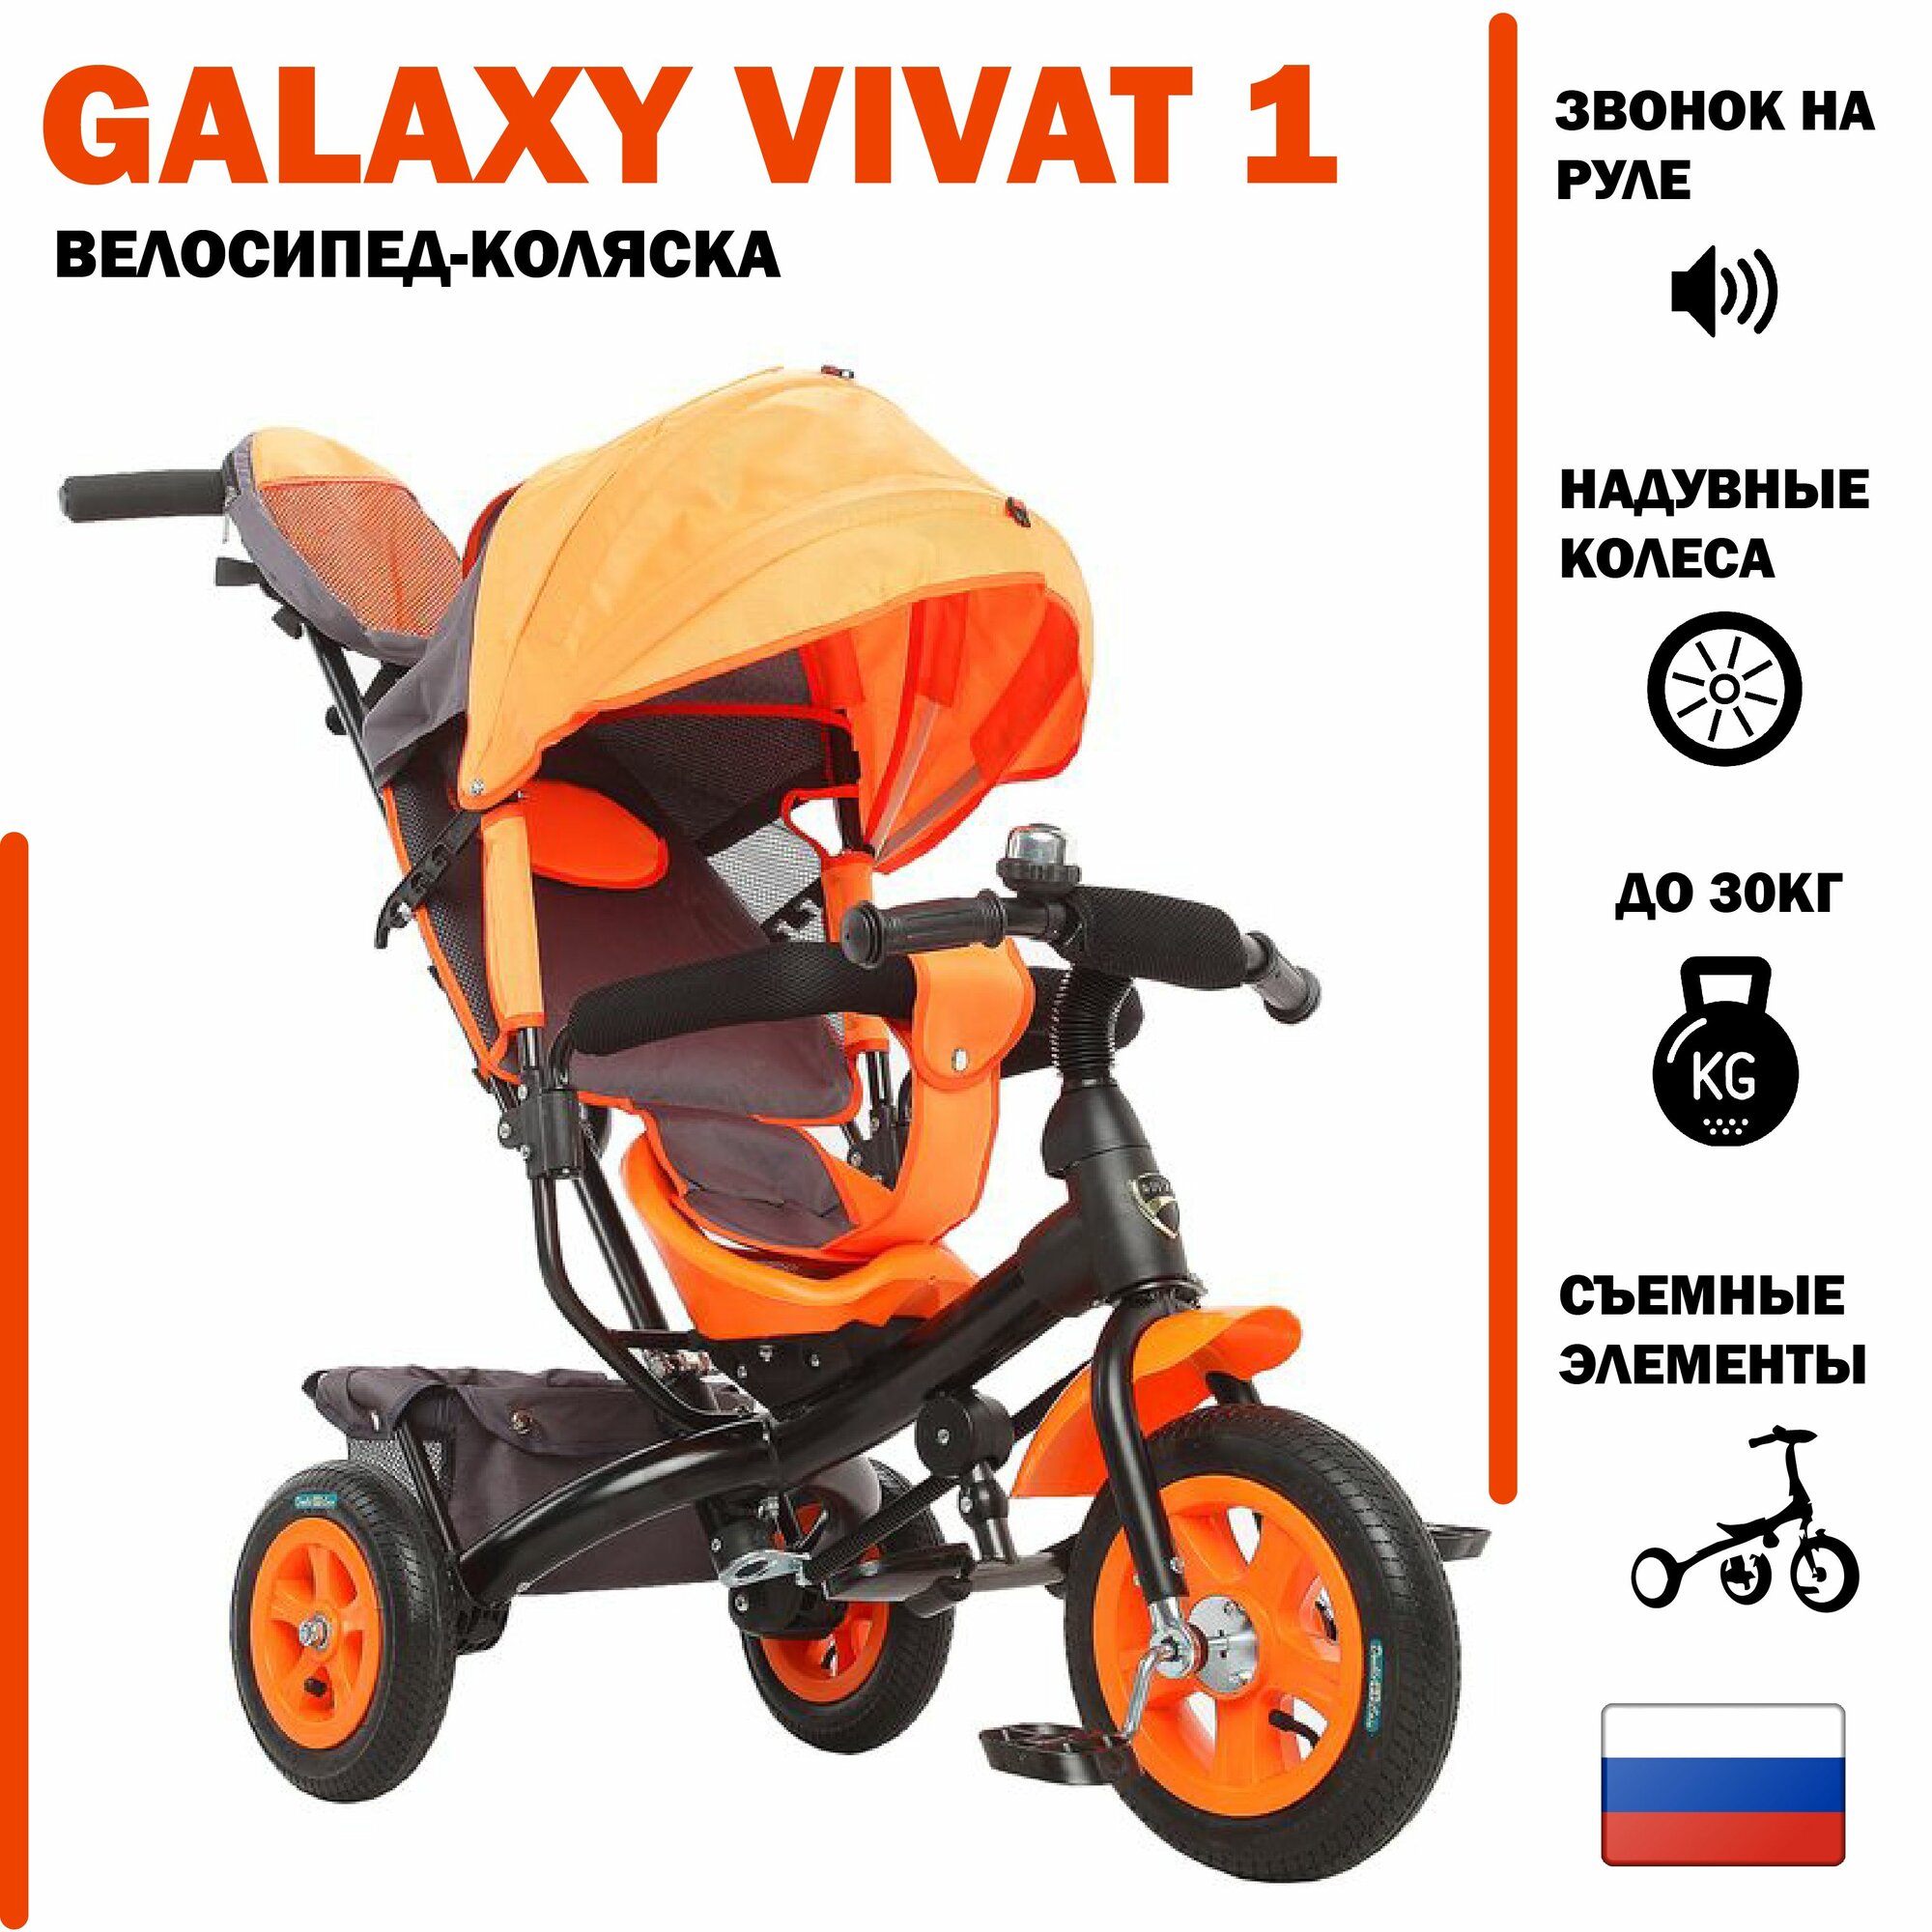 Велосипед трехколесный с ручкой VIVAT-1 надувные резиновые колеса, регулировка спинки цвет оранжевый